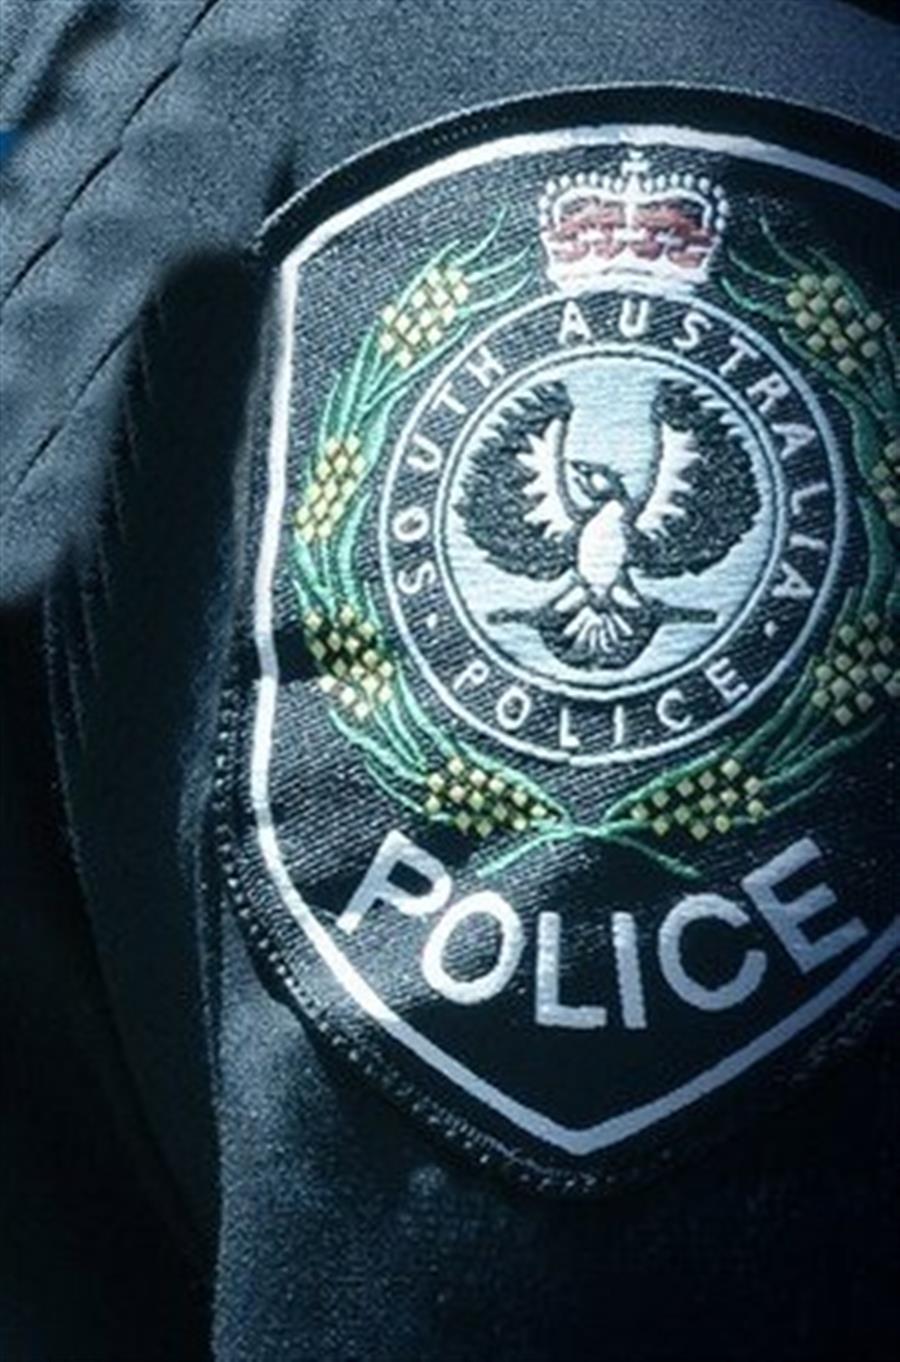 Teenager dies after stabbings near Australian school